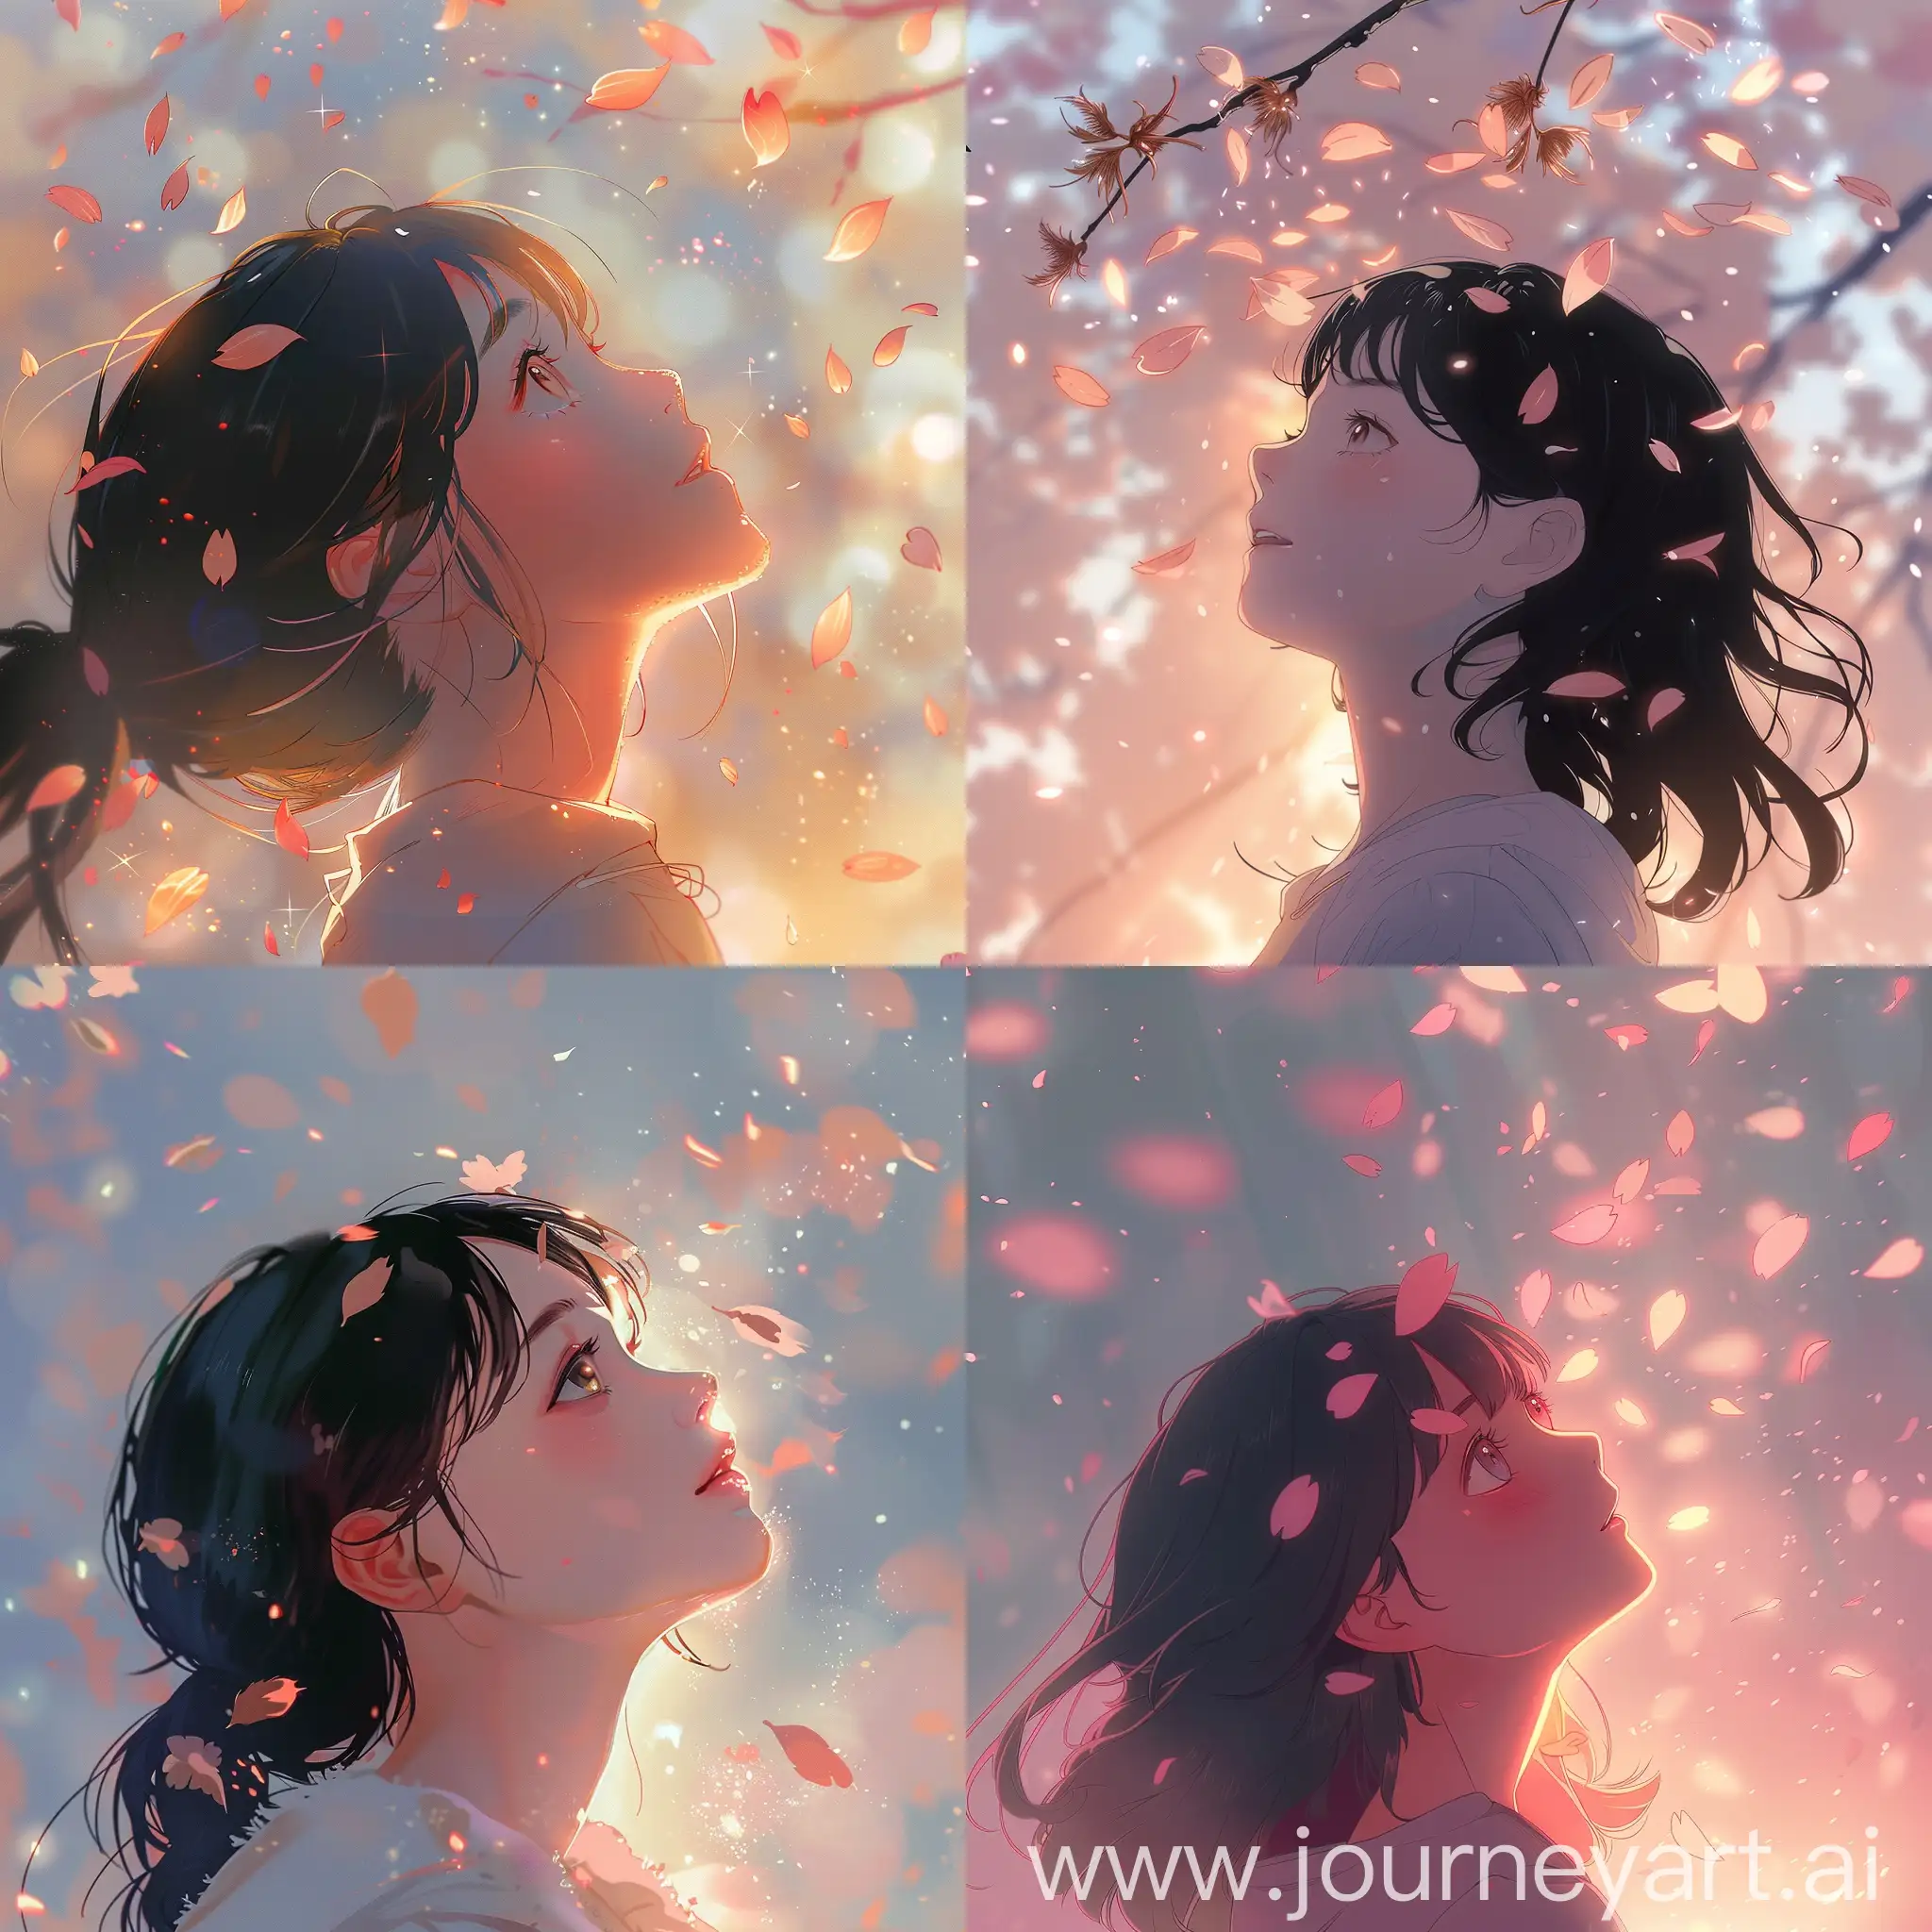 Изображение в стиле аниме , девушка смотрит вверх на небе мягкий блеск , на девушку  падают  листья сакуры , лицо счастливое и нежное но смотрит сбоку на вверх